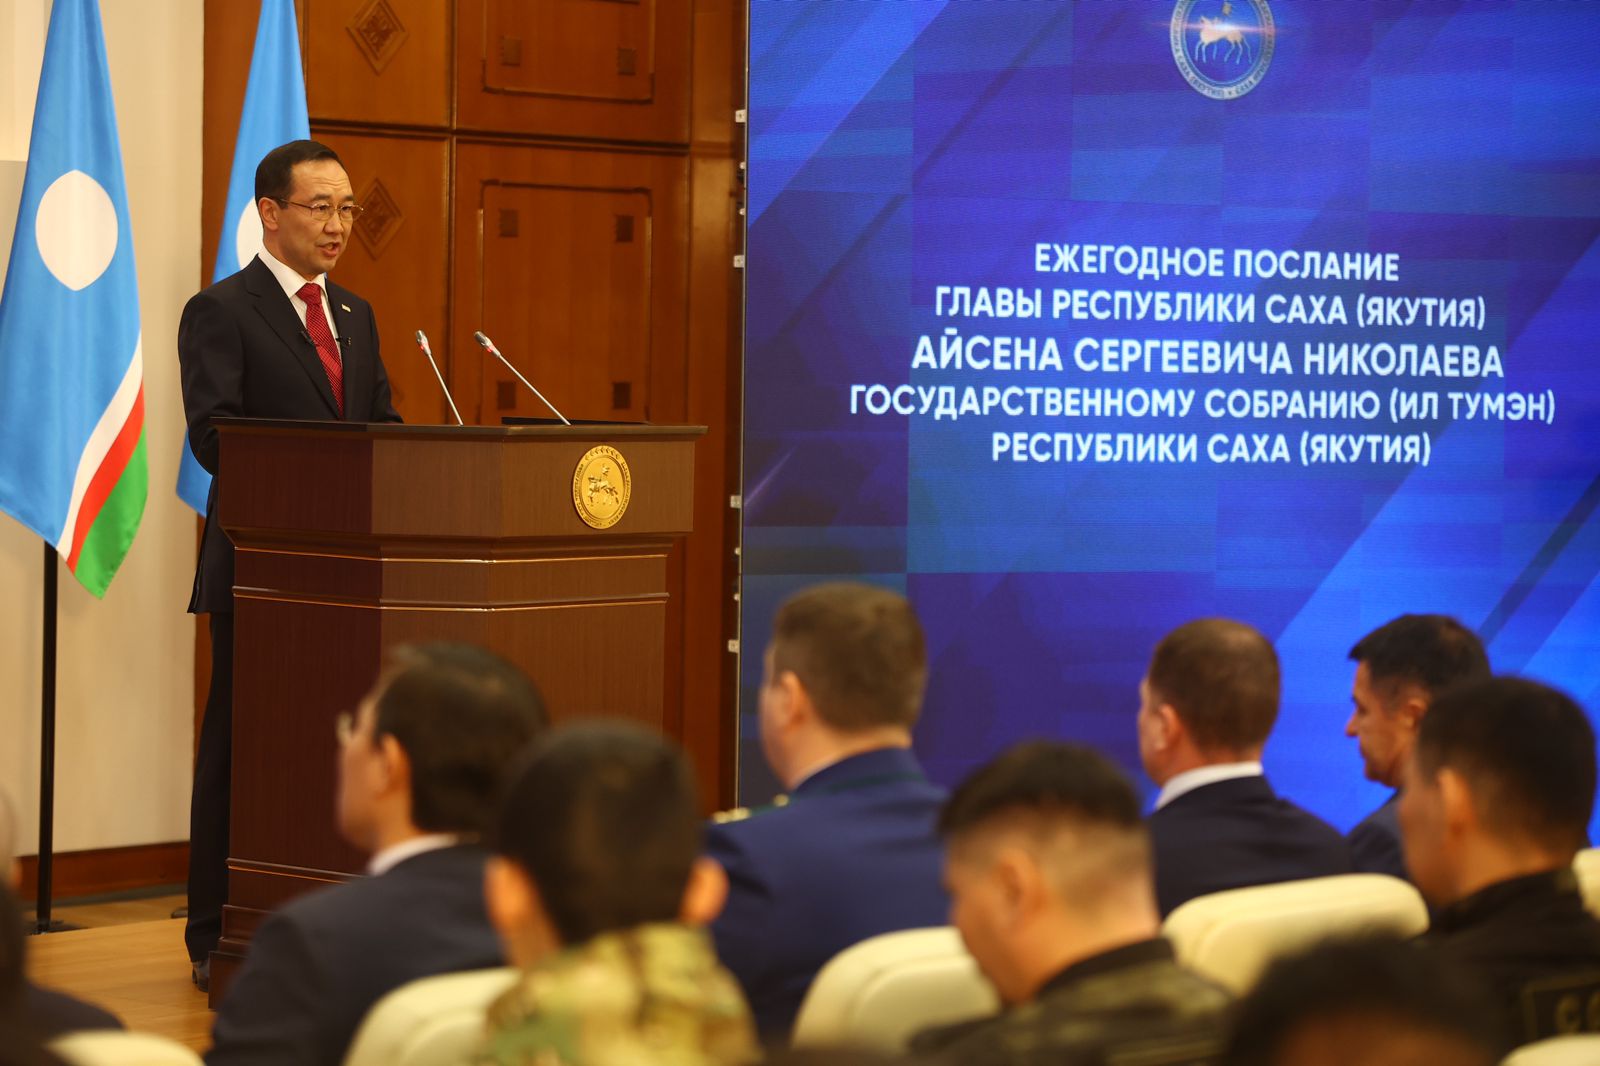 Глава Якутии: «Надо направить усилия на создание опережающей инфраструктуры развития»